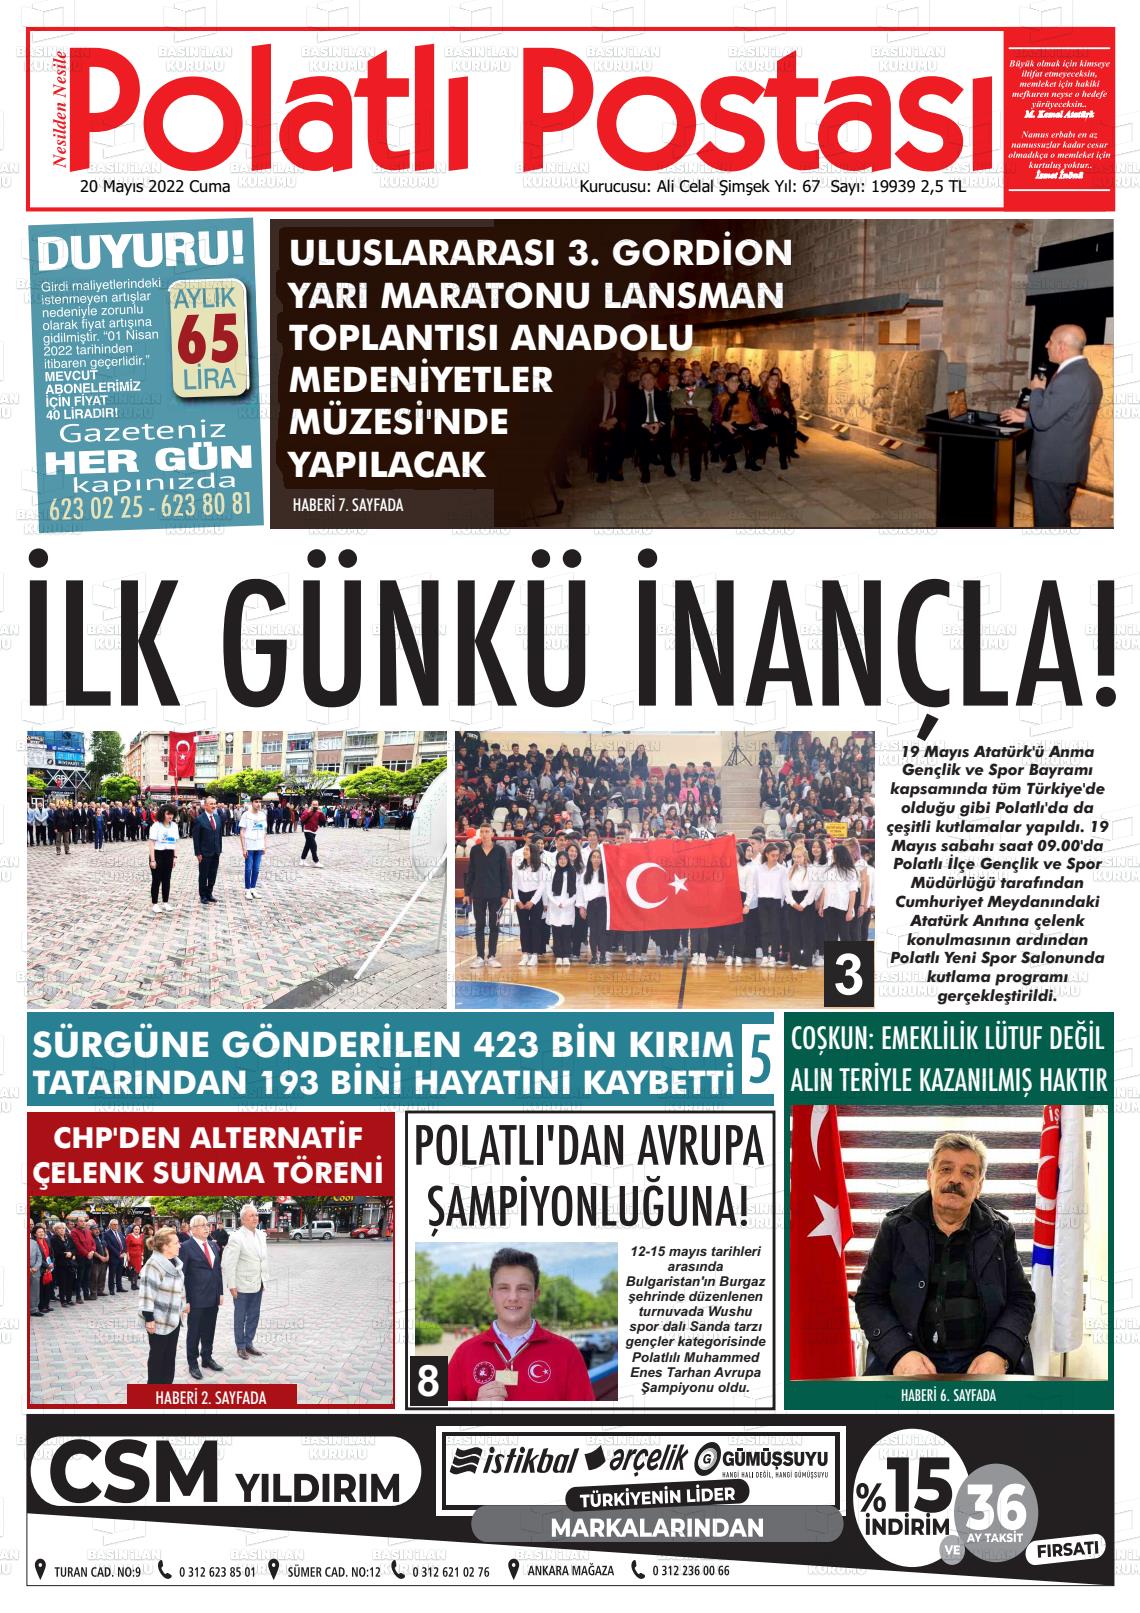 20 Mayıs 2022 Polatlı Postası Gazete Manşeti